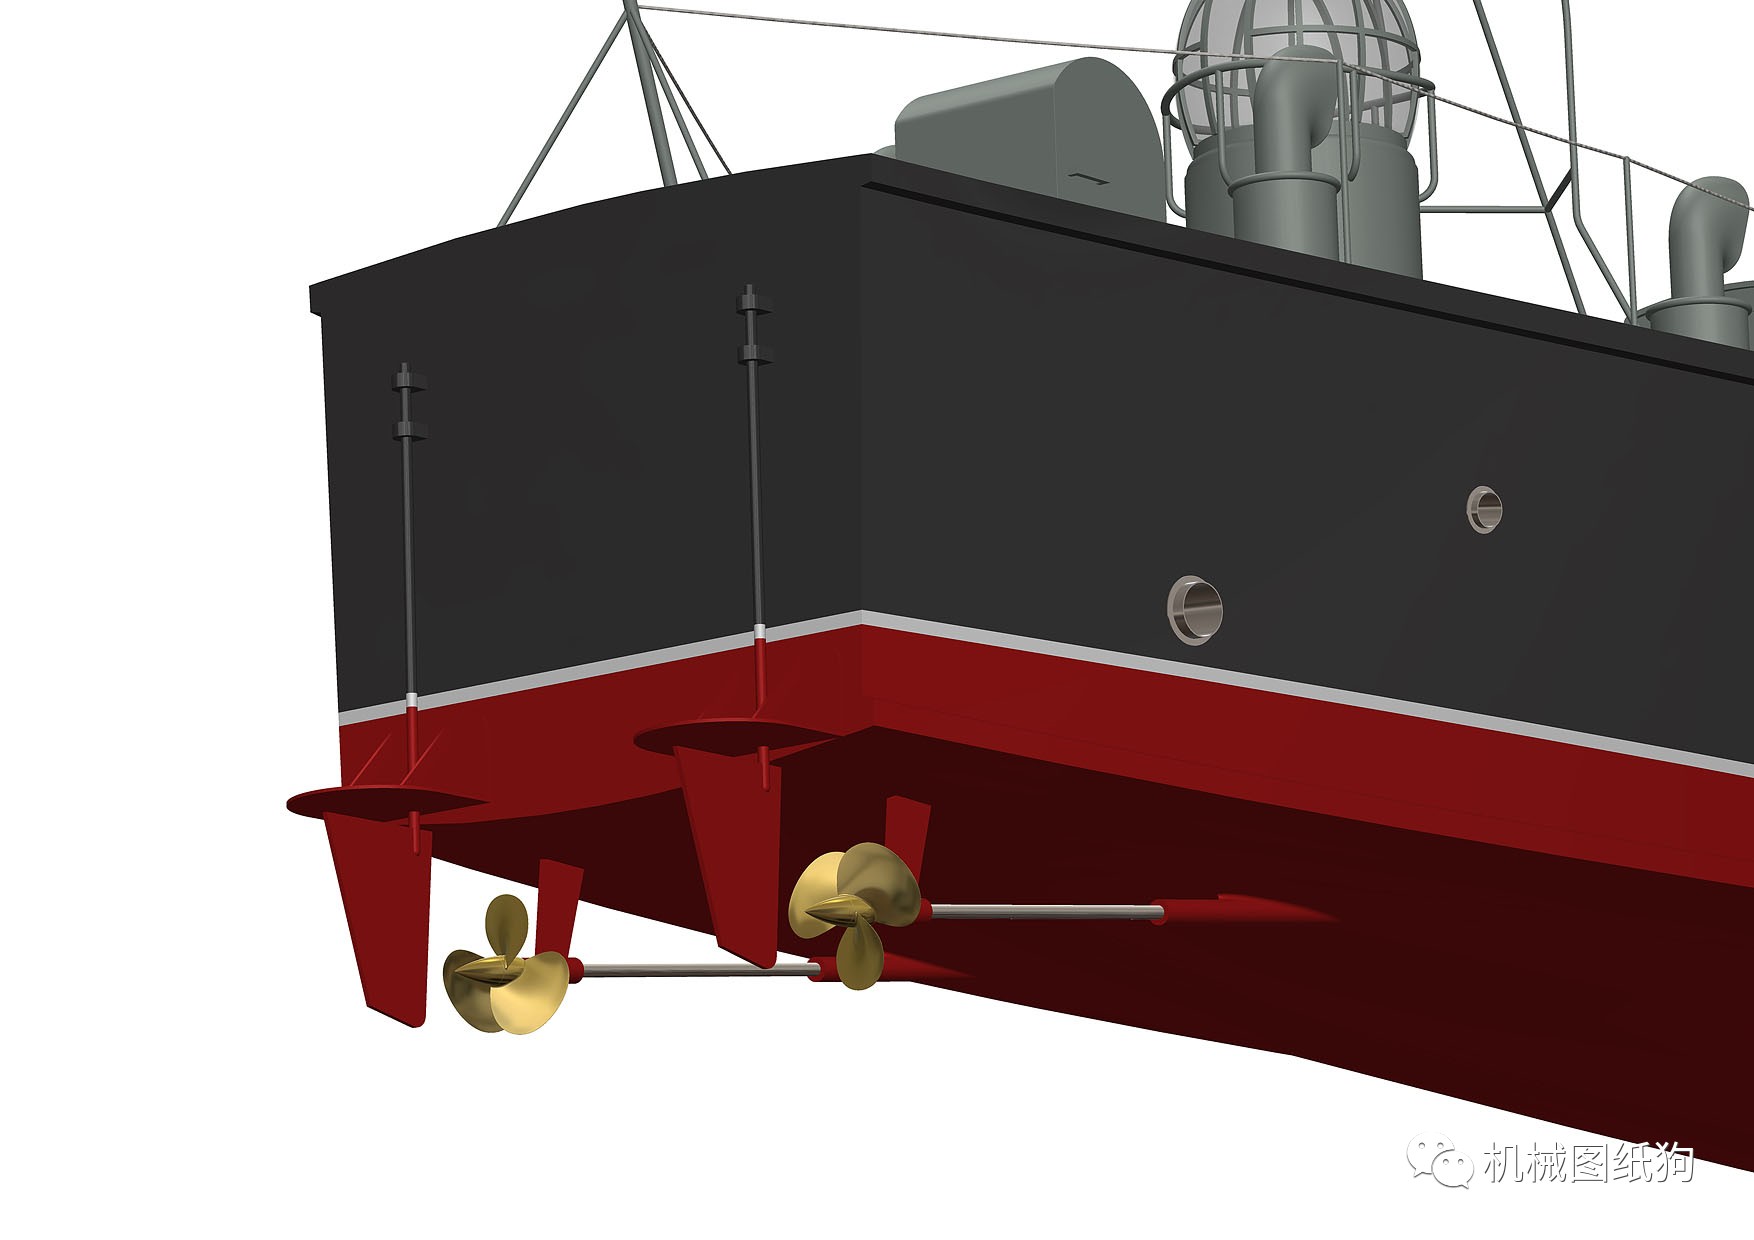 【海洋船舶】vosper 73英尺高速快艇图纸 solidworks设计 附step格式